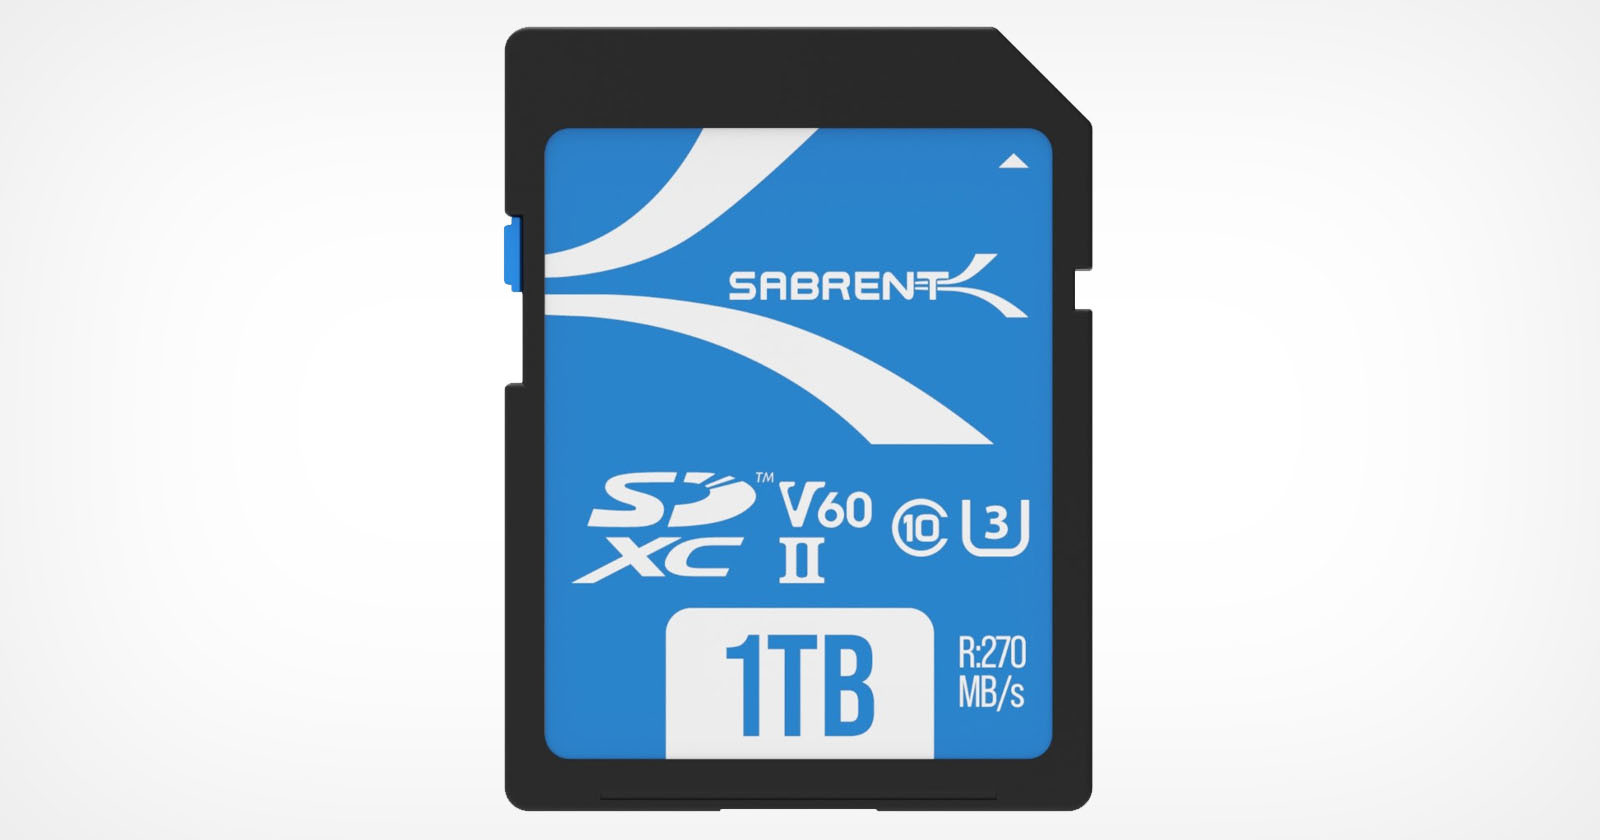  sabrent card capacity v60 1tb 